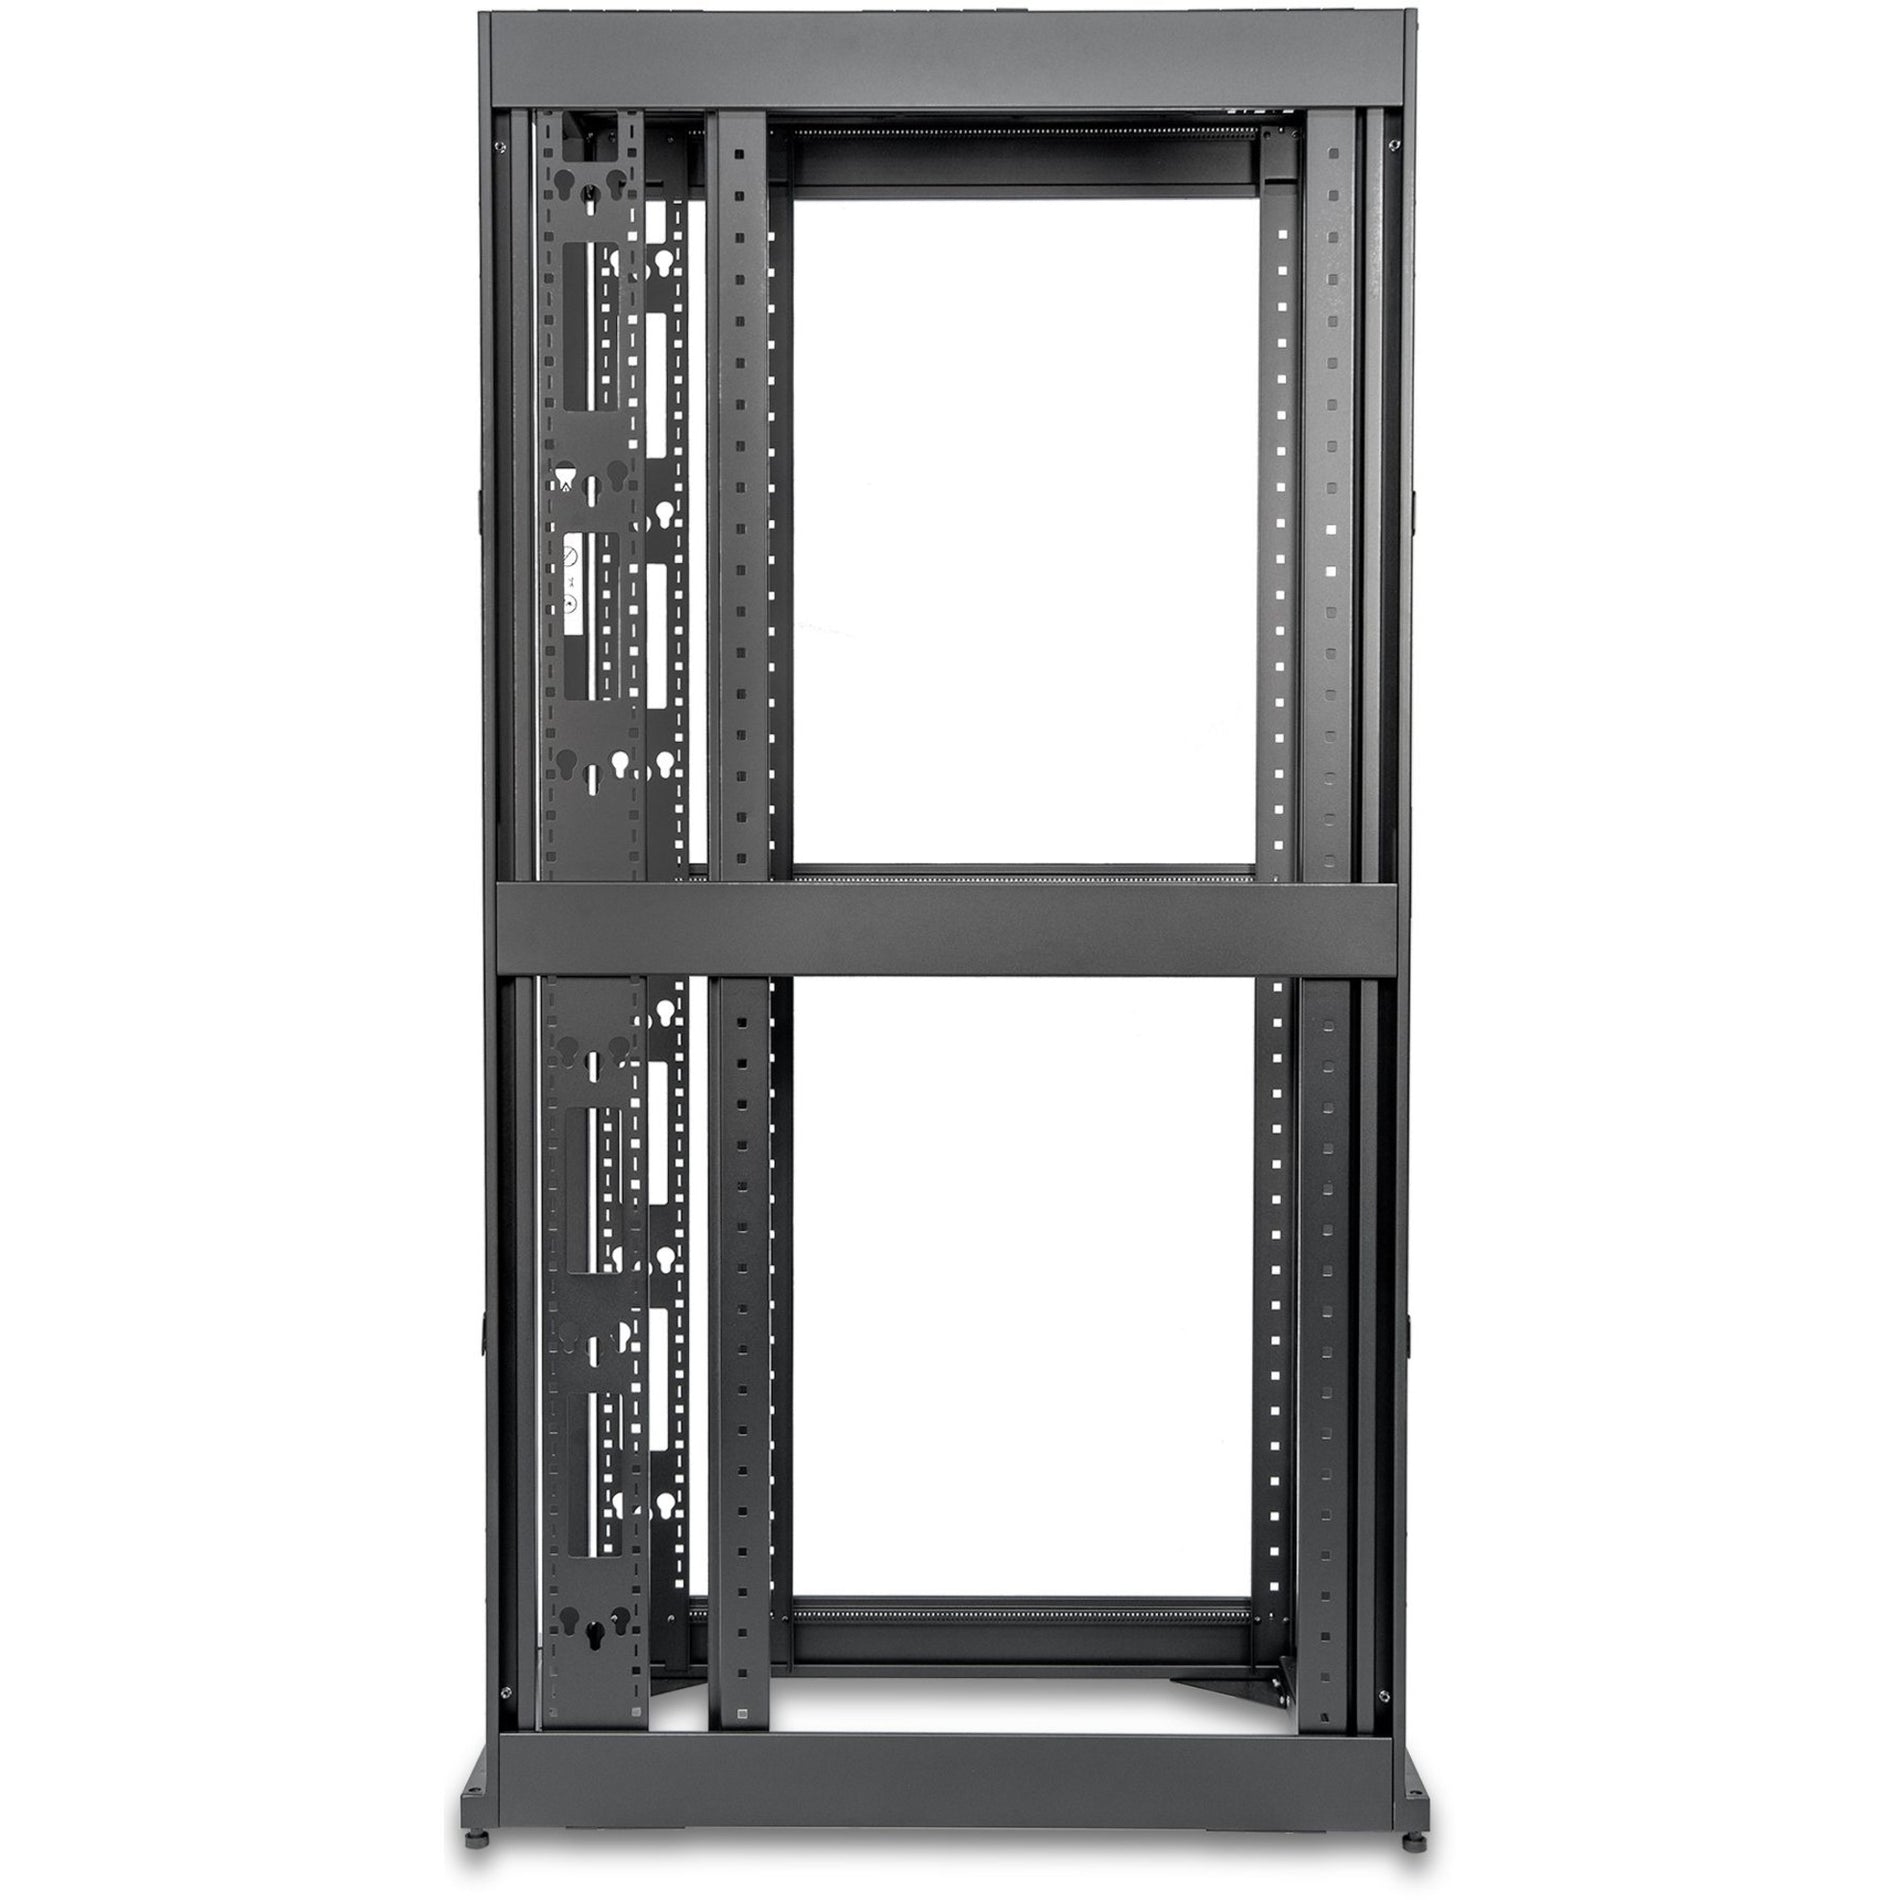 Rocstor Y10E037-B1 SolidRack 4-Post Open Frame Rack Cabinet, Heavy Duty, 42U